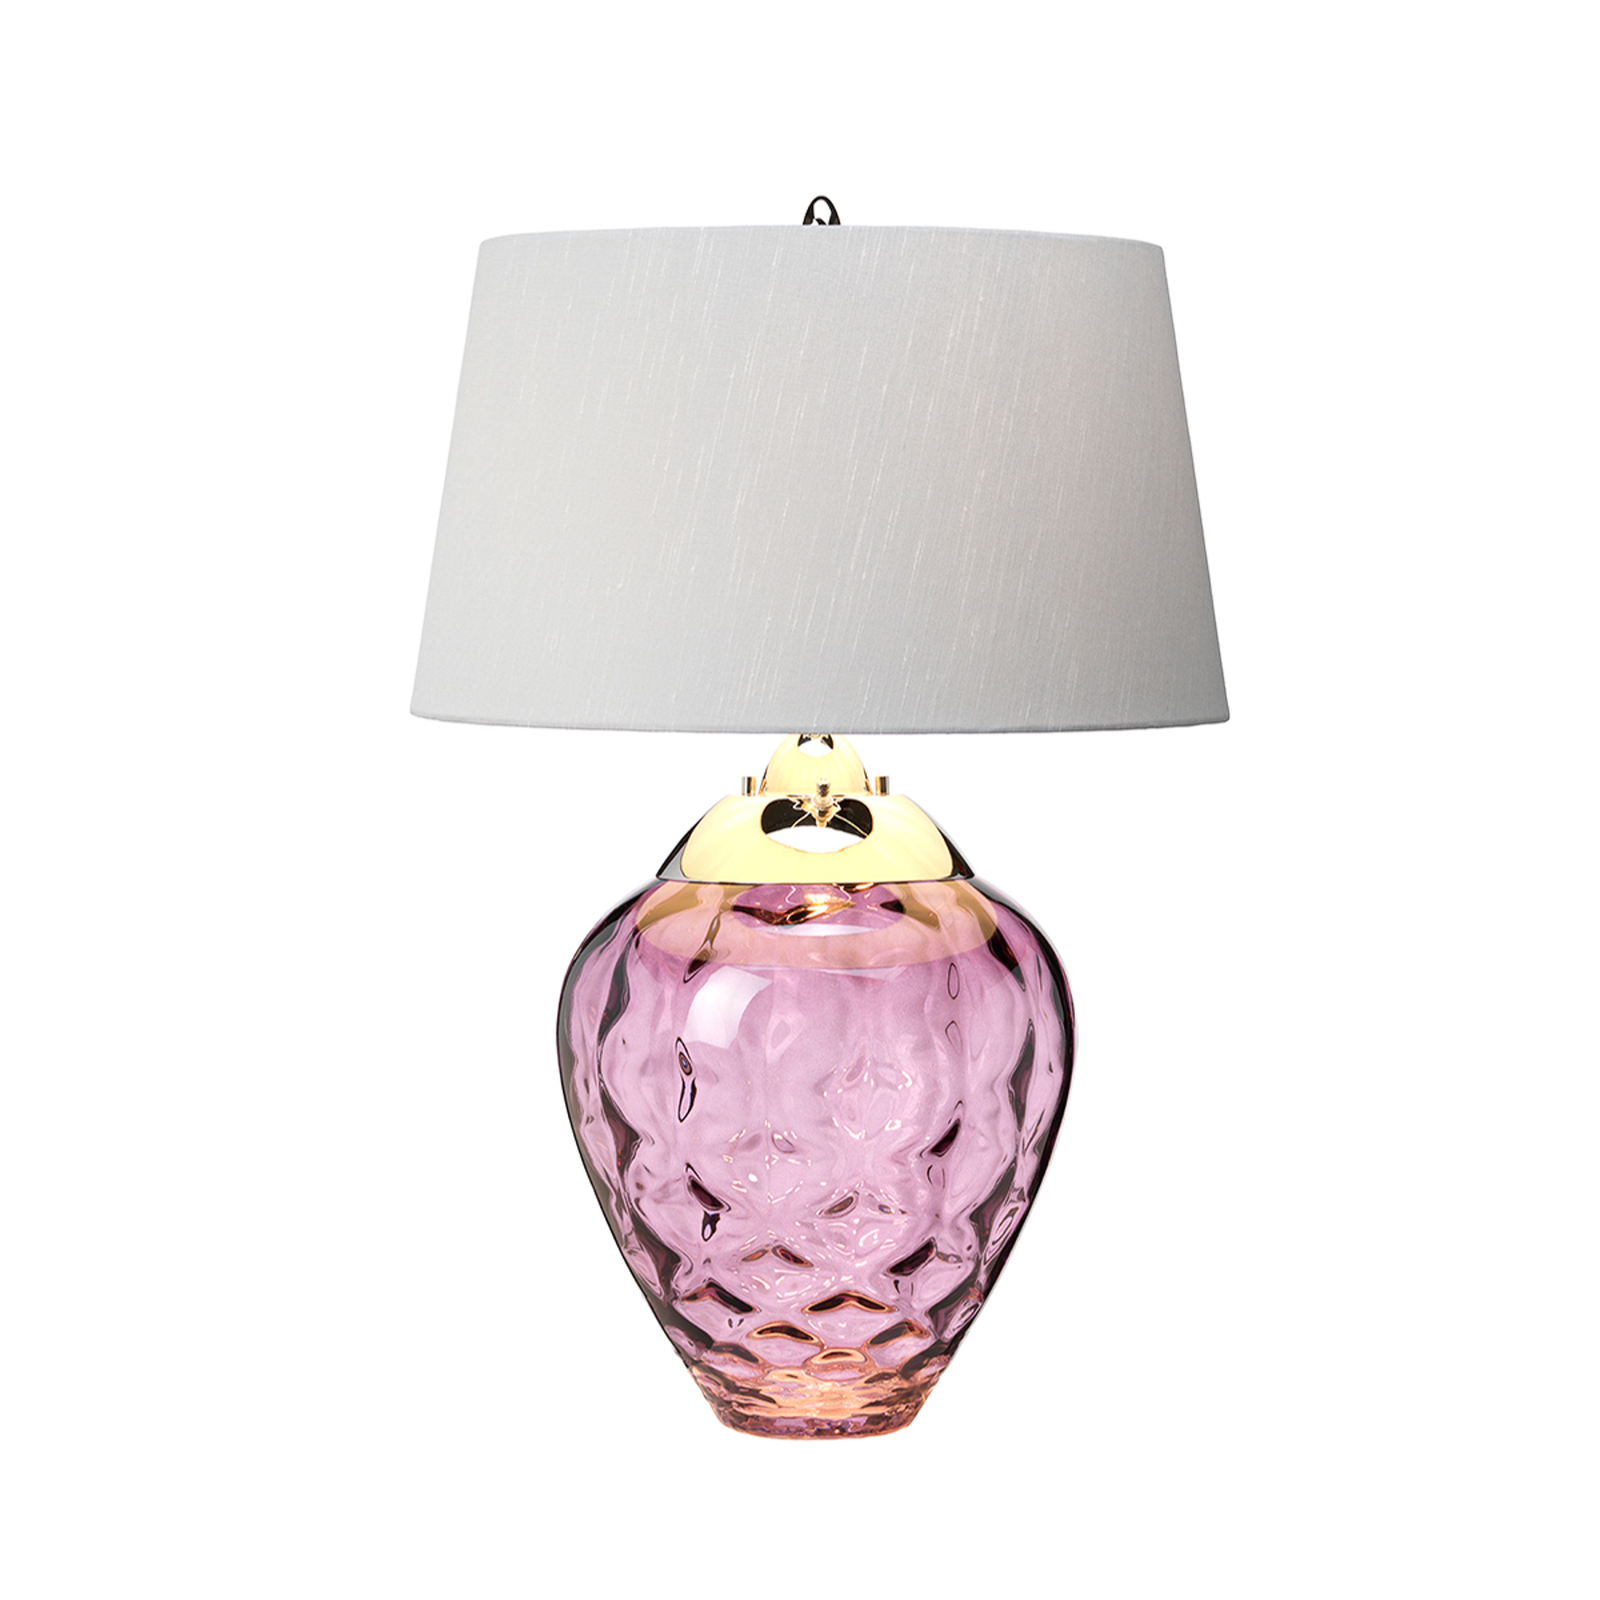 Tischlampe Samara, Ø 45,7 cm, pink, Stoff, Glas, 2-flammig